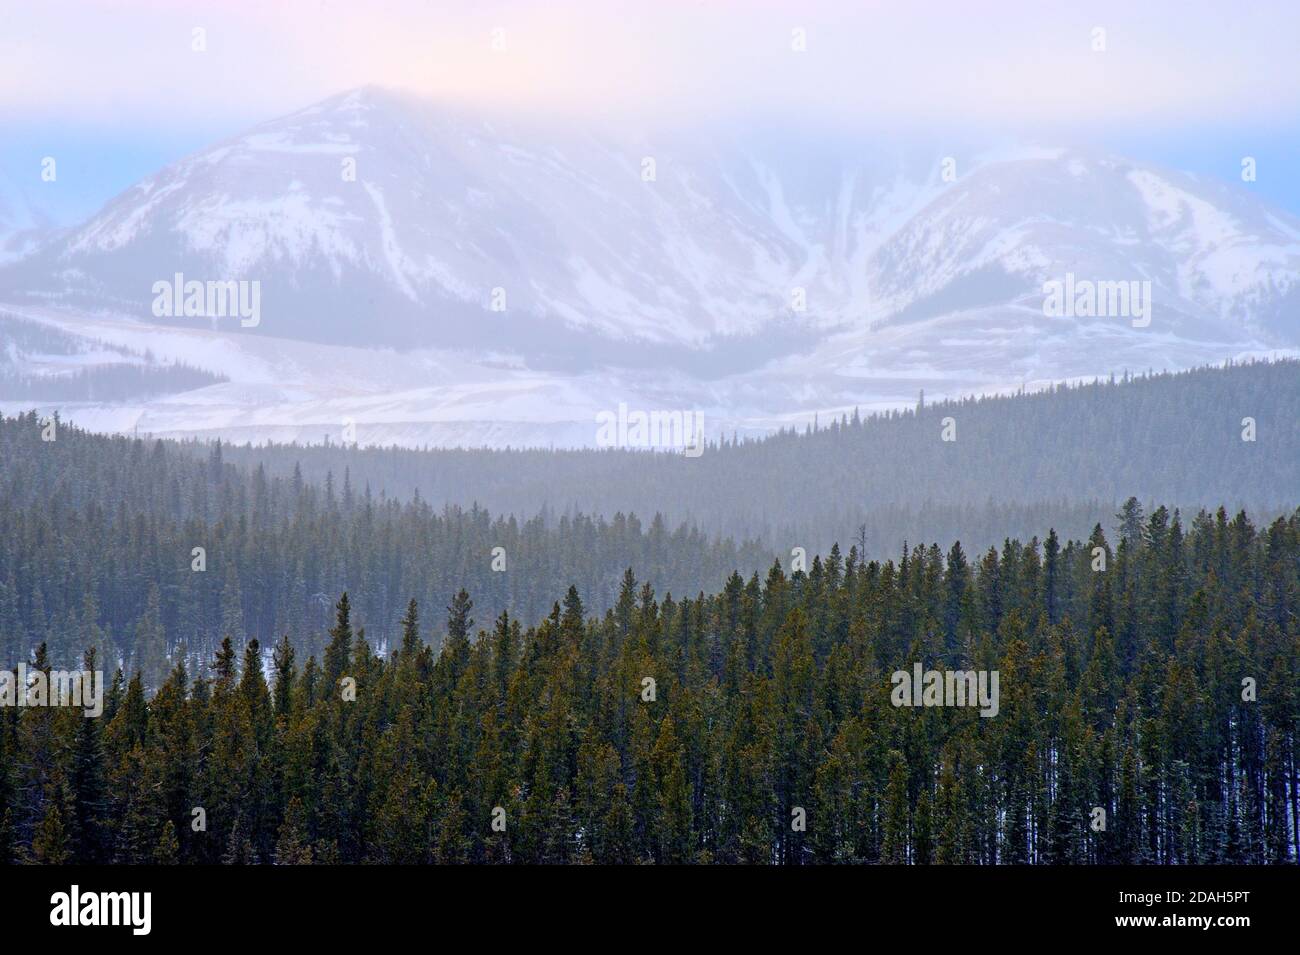 Ein horizontales Landschaftsbild von bewaldeten Hügeln, die an einem verschneiten Wintertag im ländlichen Alberta Kanada zu einem felsigen Berg führen. Stockfoto